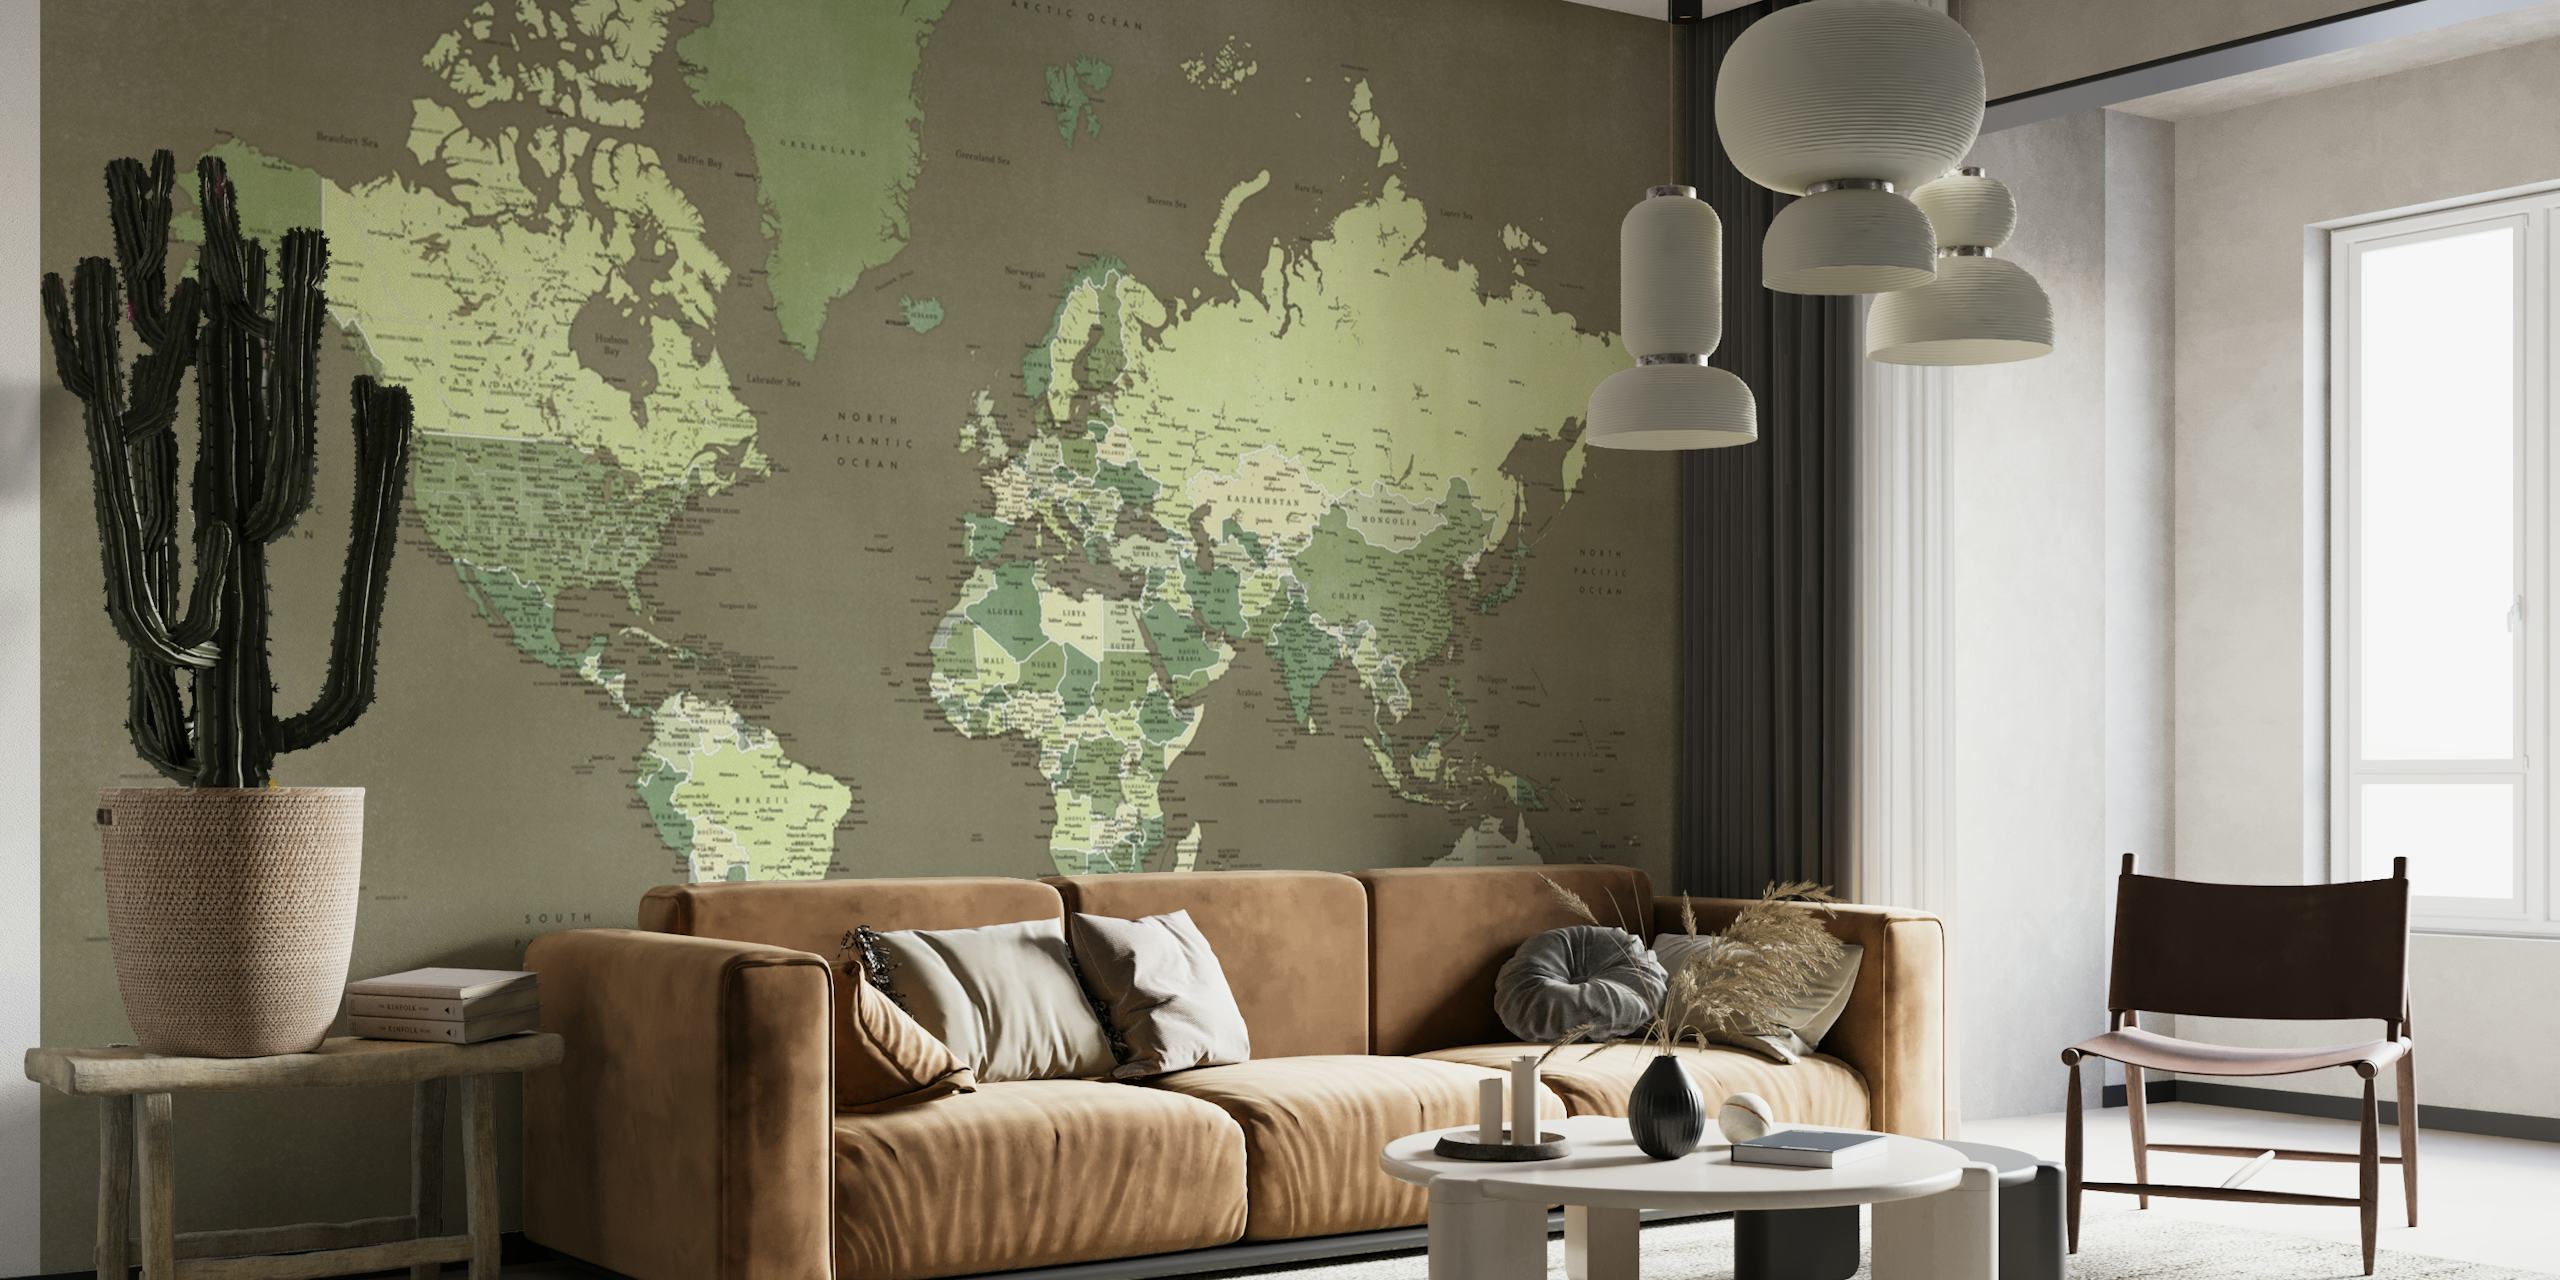 Detailed world map Camo papel pintado